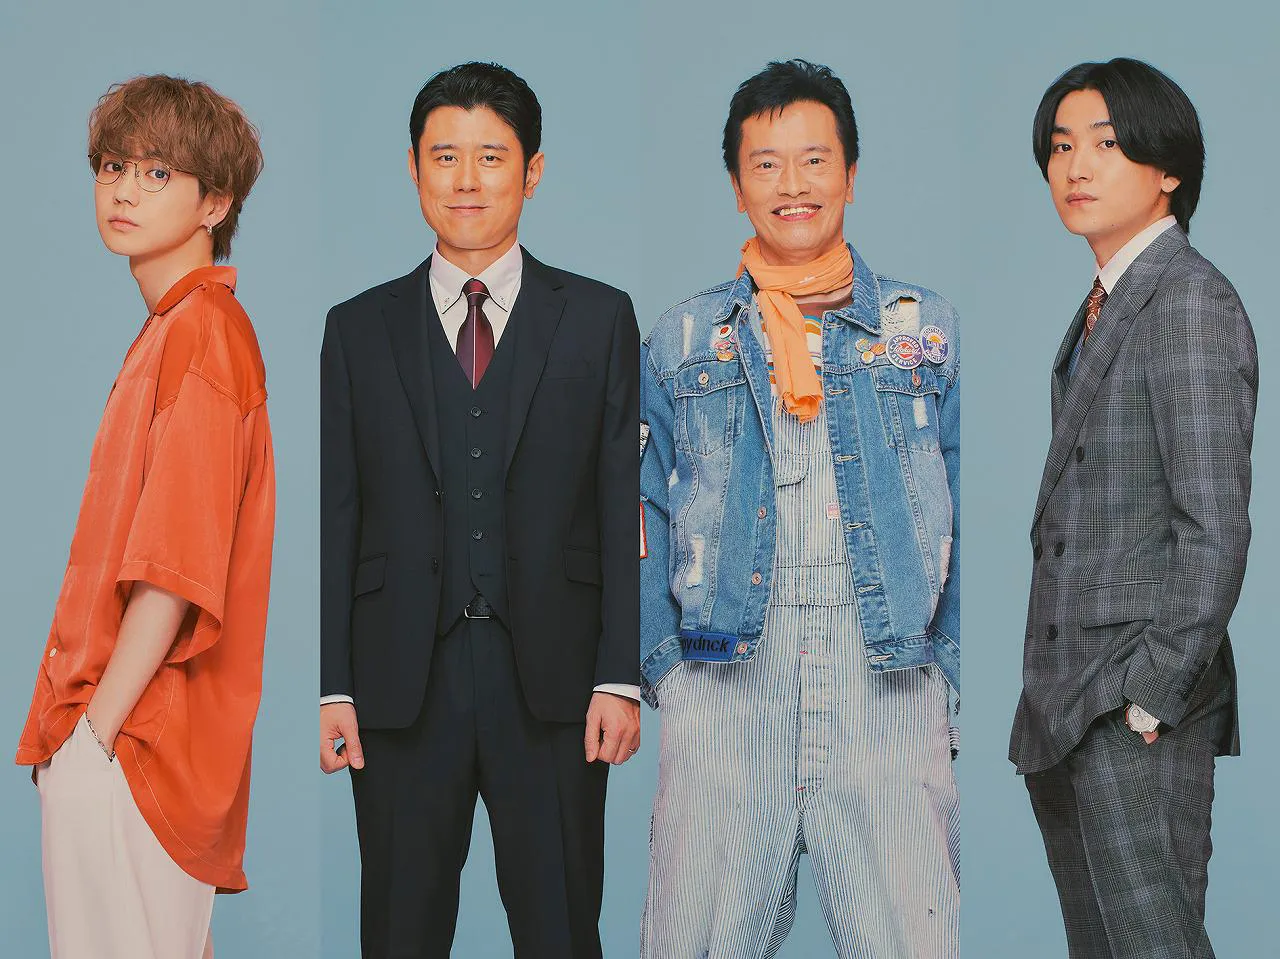 ドラマ「魔法のリノベ」に出演する吉野北人、原田泰造、遠藤憲一、金子大地(写真左から)